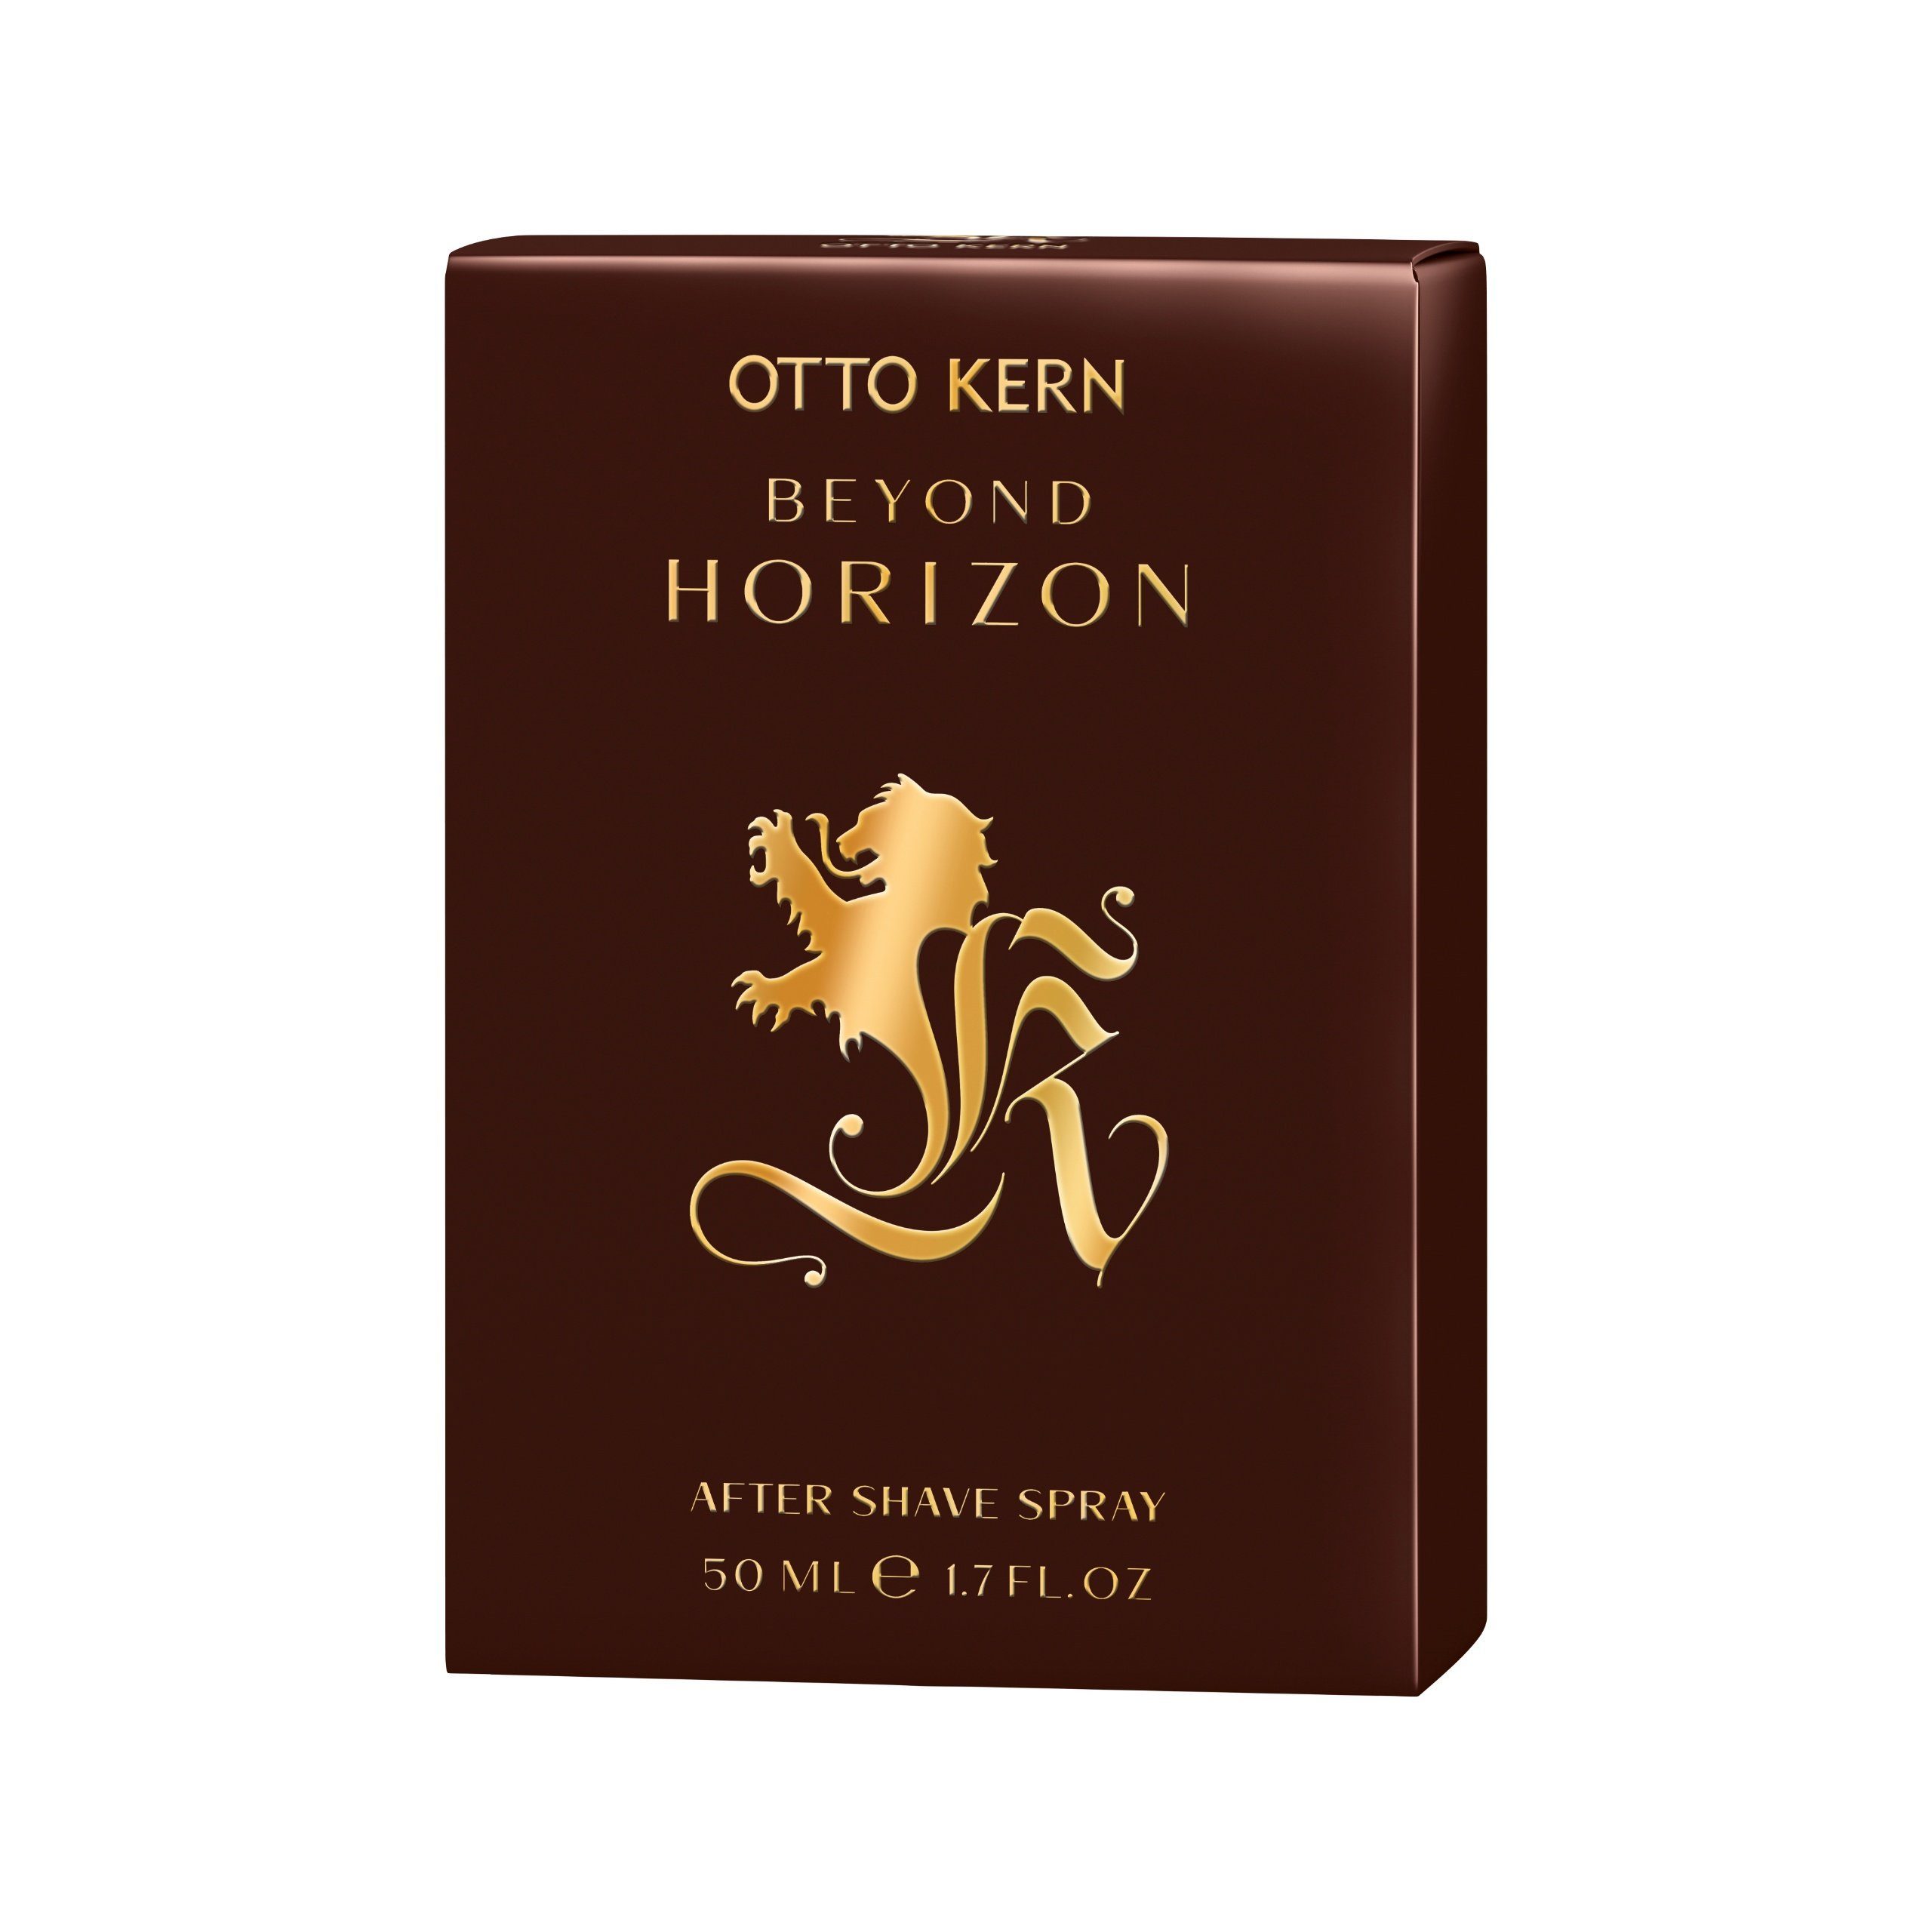 Spray Otto Kern Horizon Gesichts-Reinigungslotion Kern ml After Shave 50 Beyond Kern